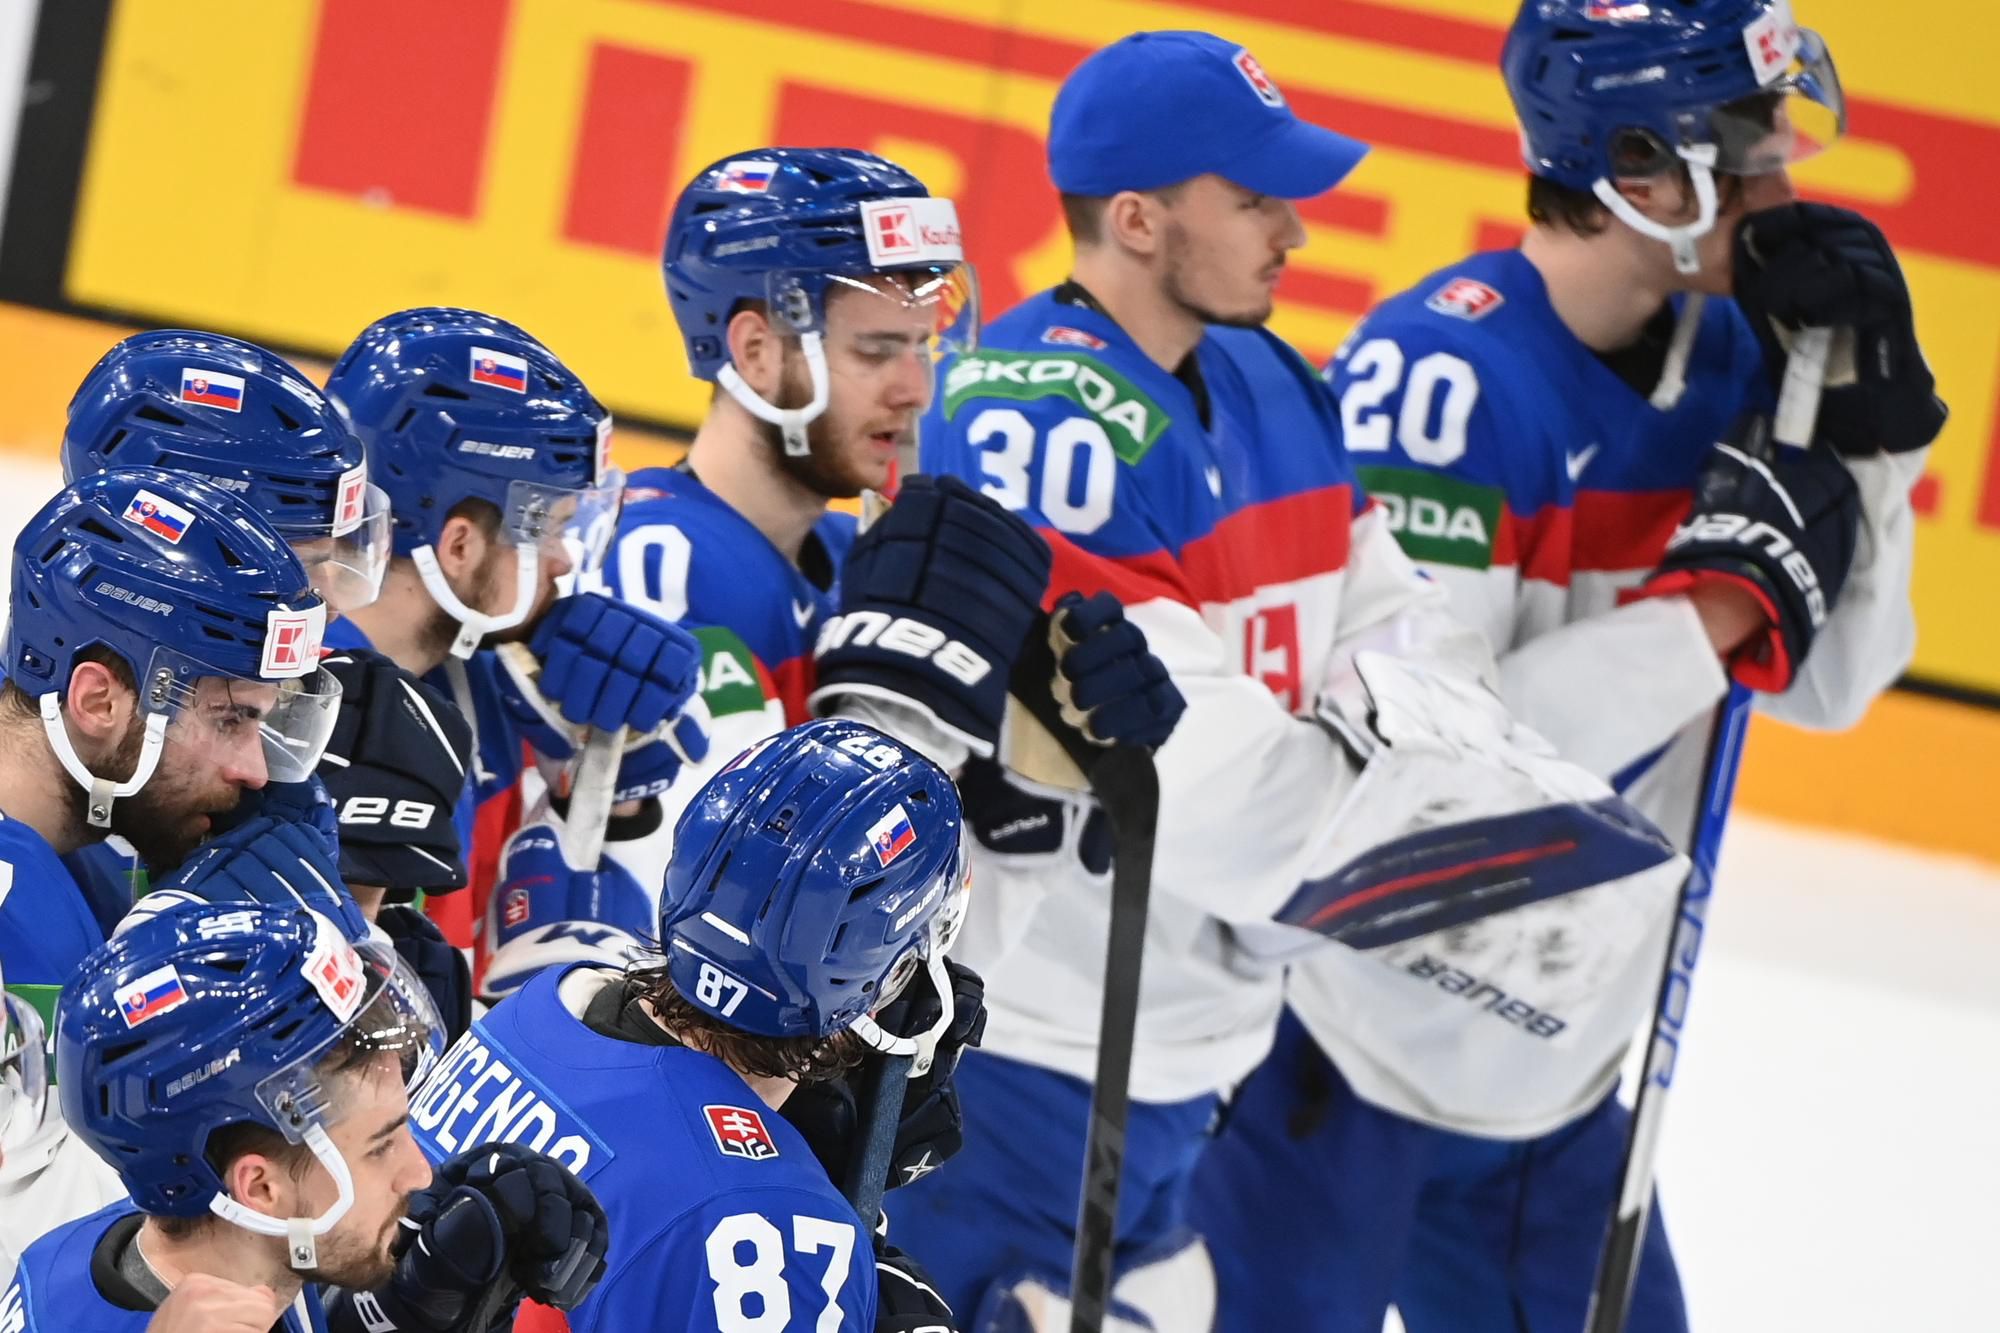 MS v hokeji 2022: Slovensko - Fínsko (Slovenskí hokejisti smútia po prehre)